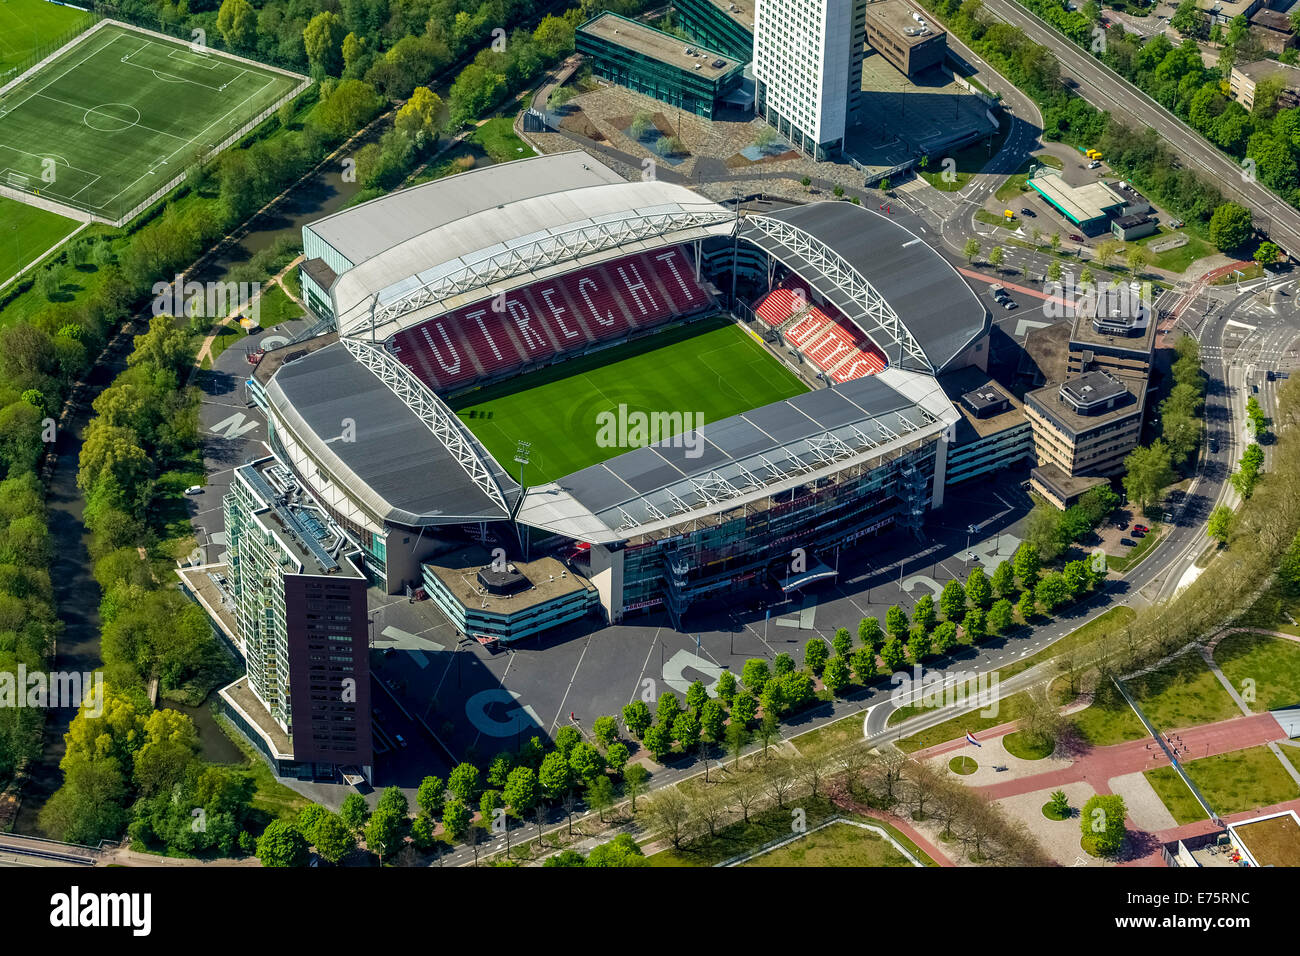 Stadion Utrecht